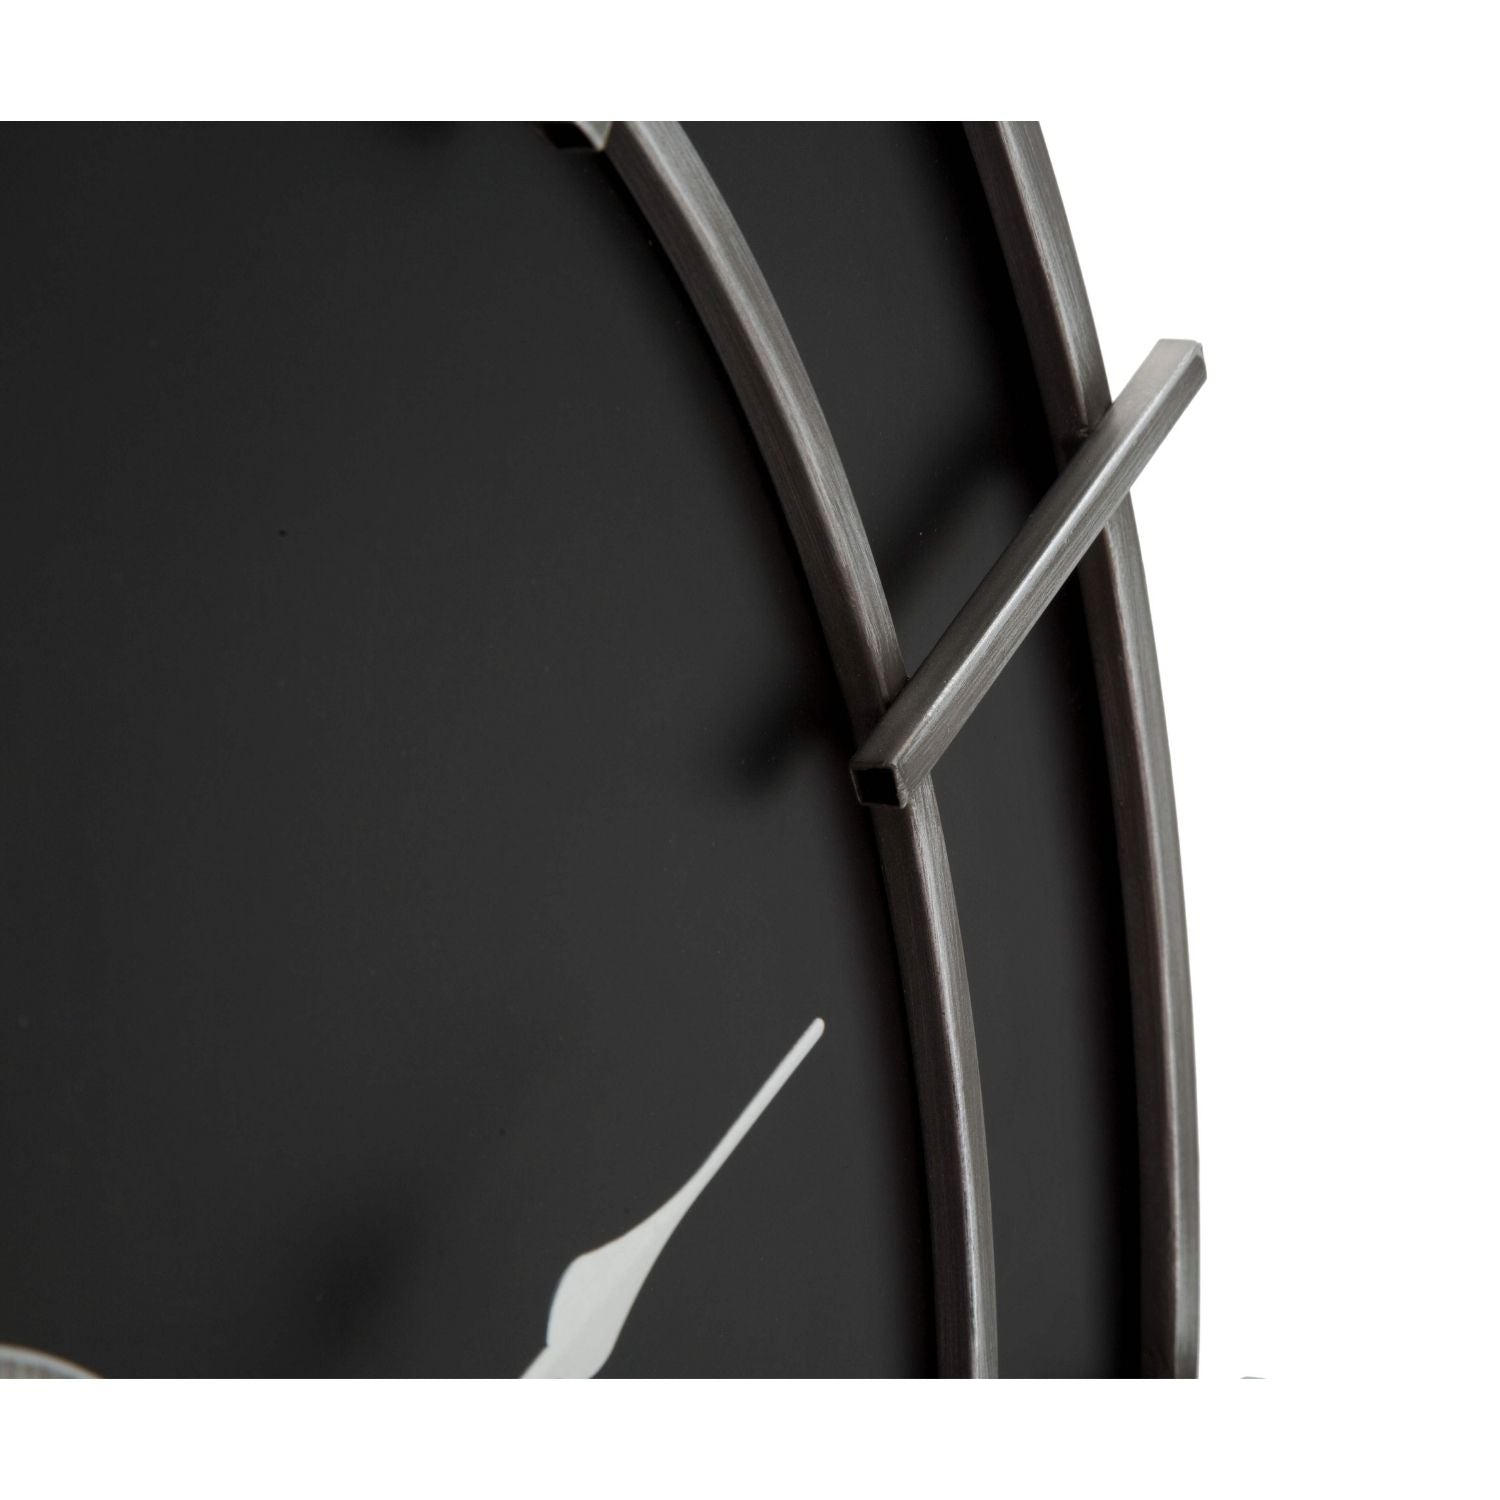 Reloj de pared EMO negro